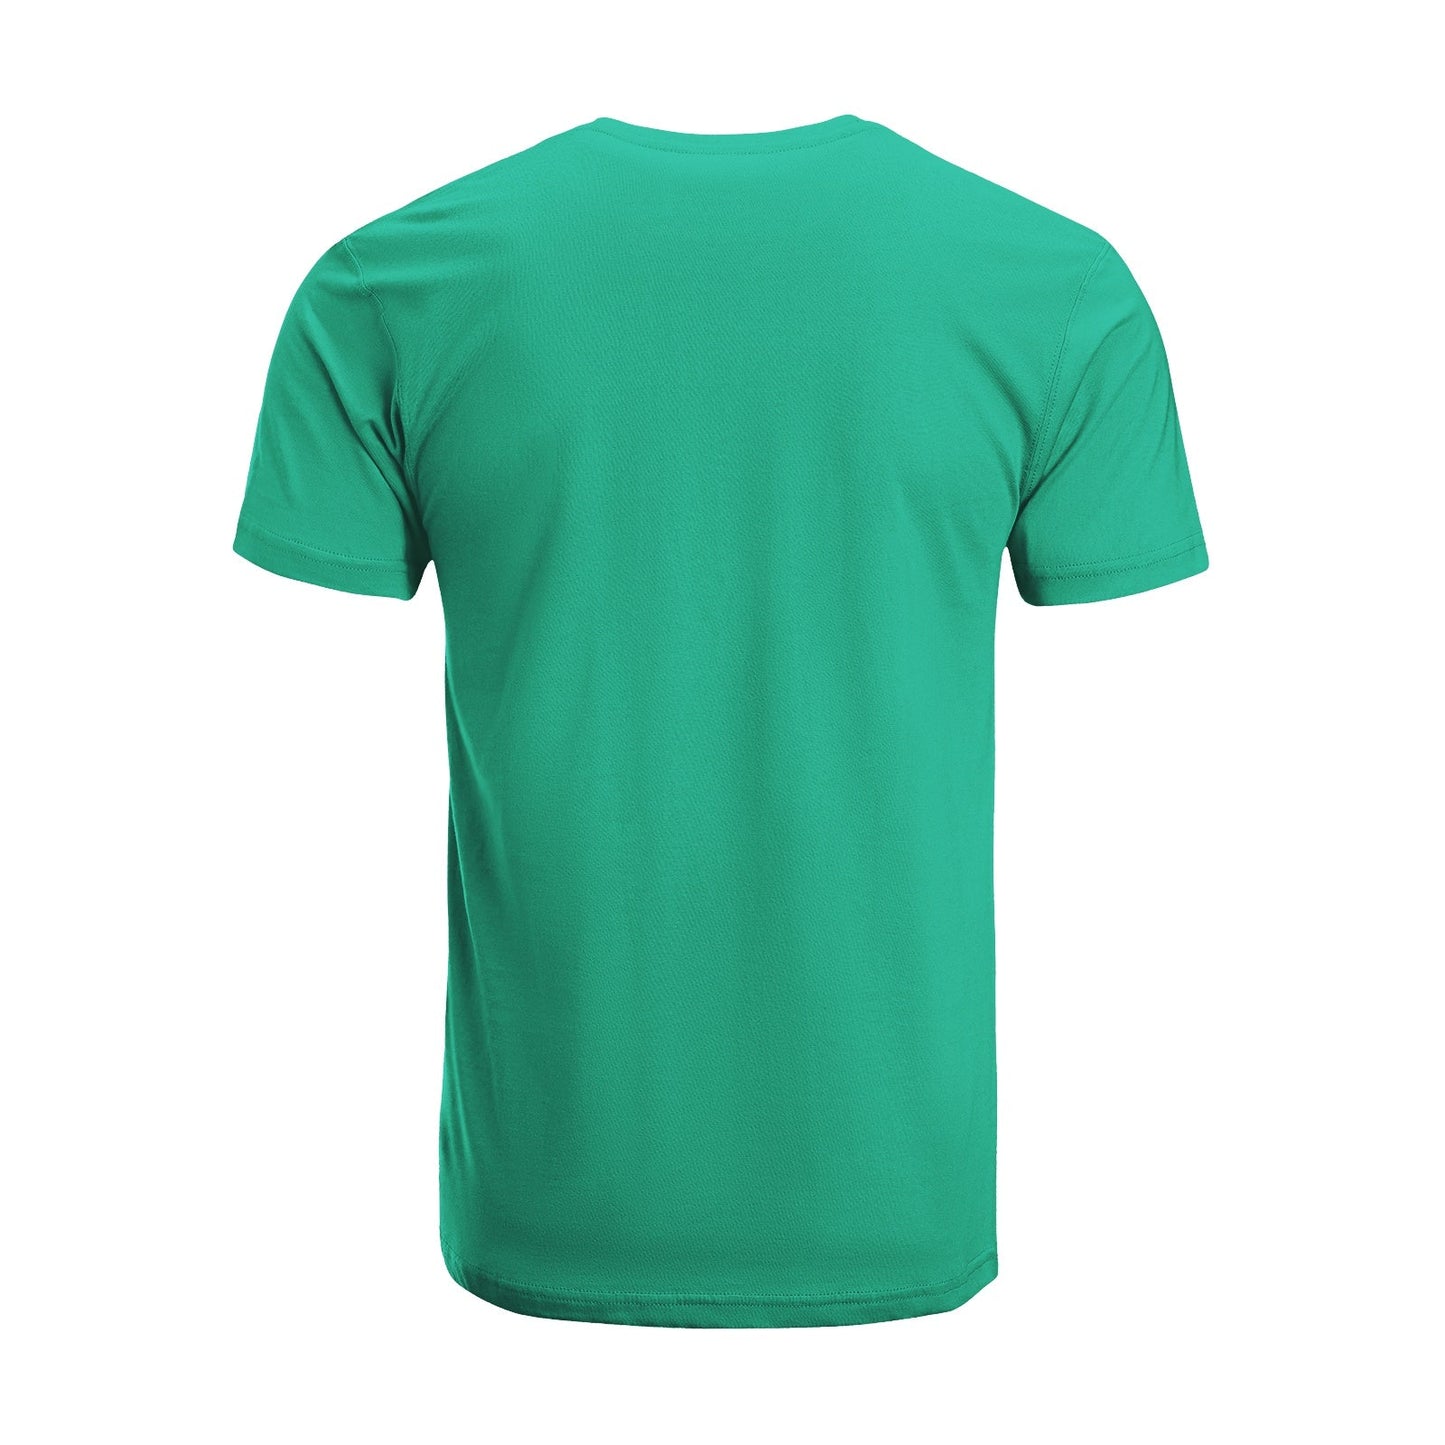 Unisex Short Sleeve Crew Neck Cotton Jersey T-Shirt TRUCK 46